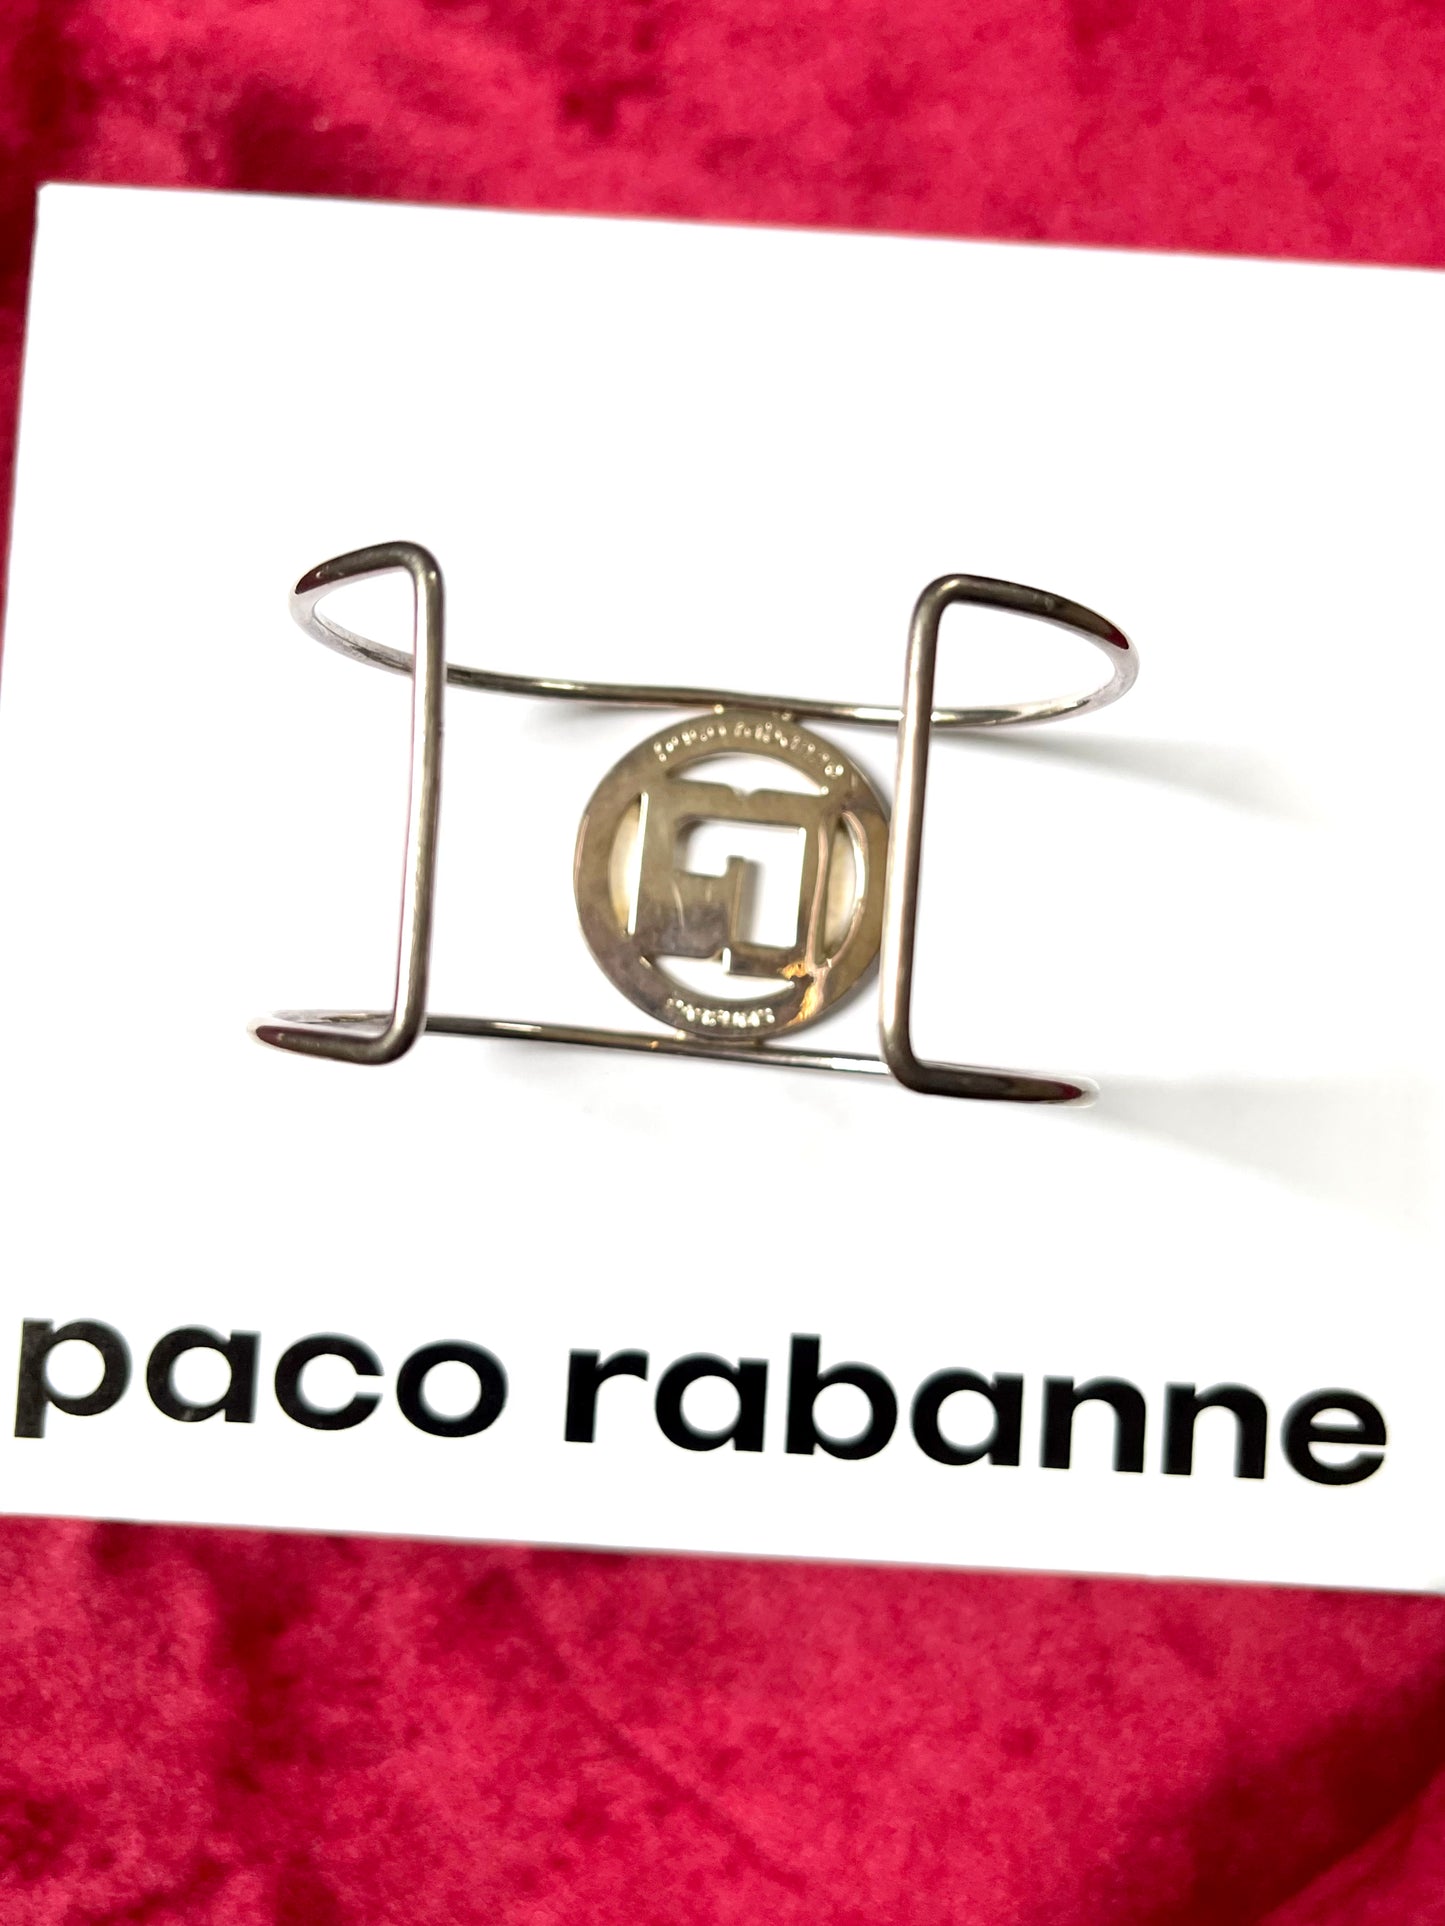 Manchette Paco Rabanne rénovée avec de l'or 18 carats